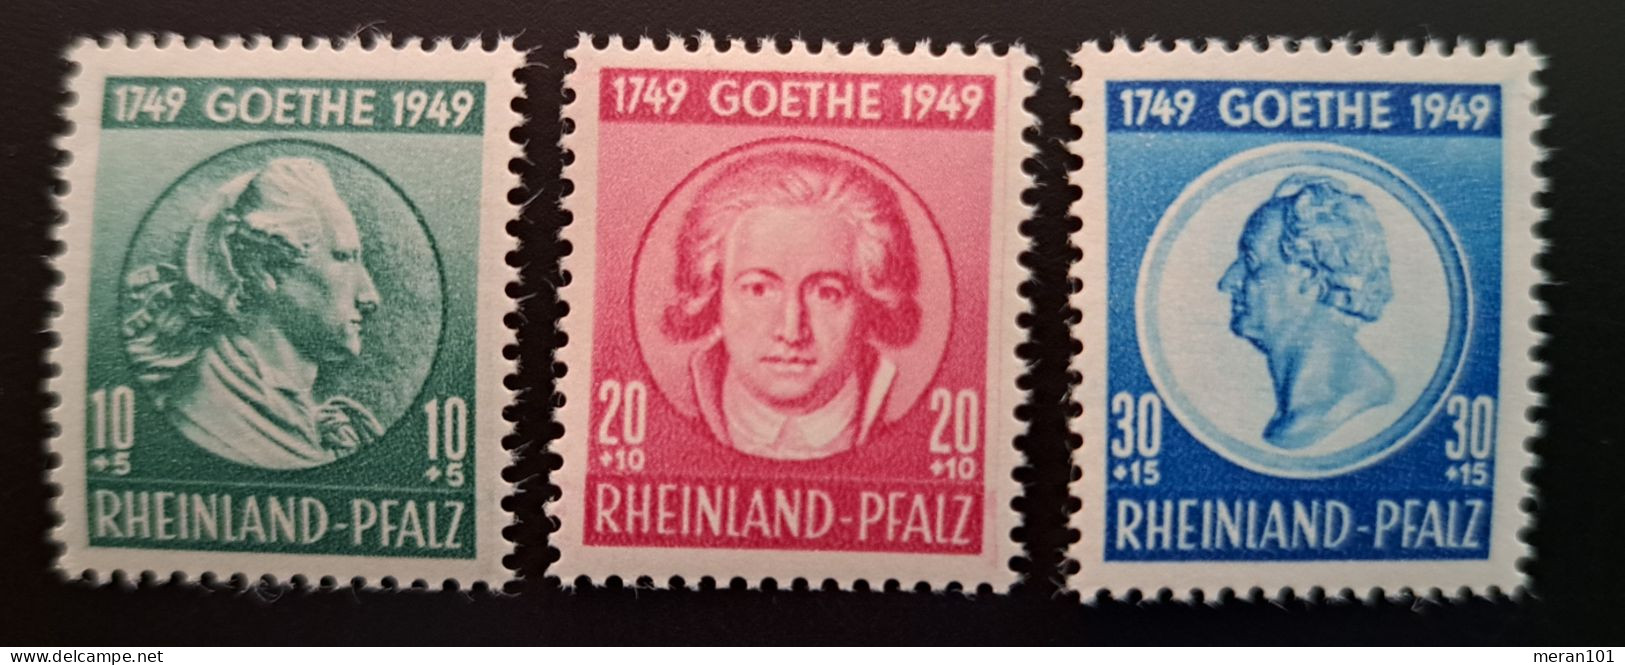 Rheinland Pfalz, Mi 46-48 MNH(postfrisch) Goethe" - Rhine-Palatinate